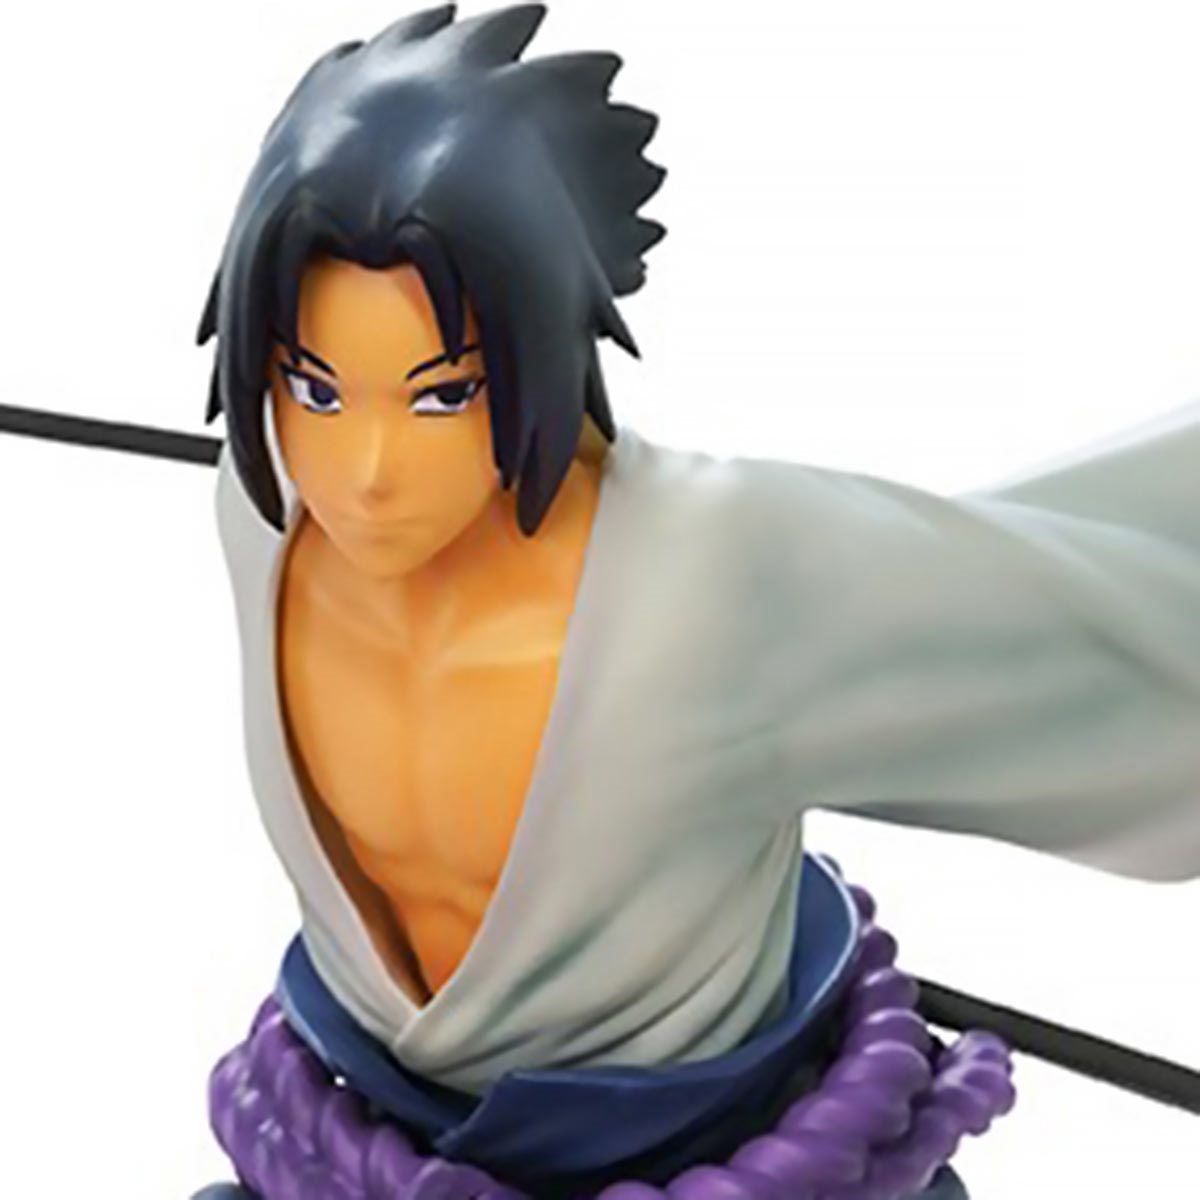 Naruto: Shippuden Sasuke Uchiha Super Figure Collection 1:10 Scale